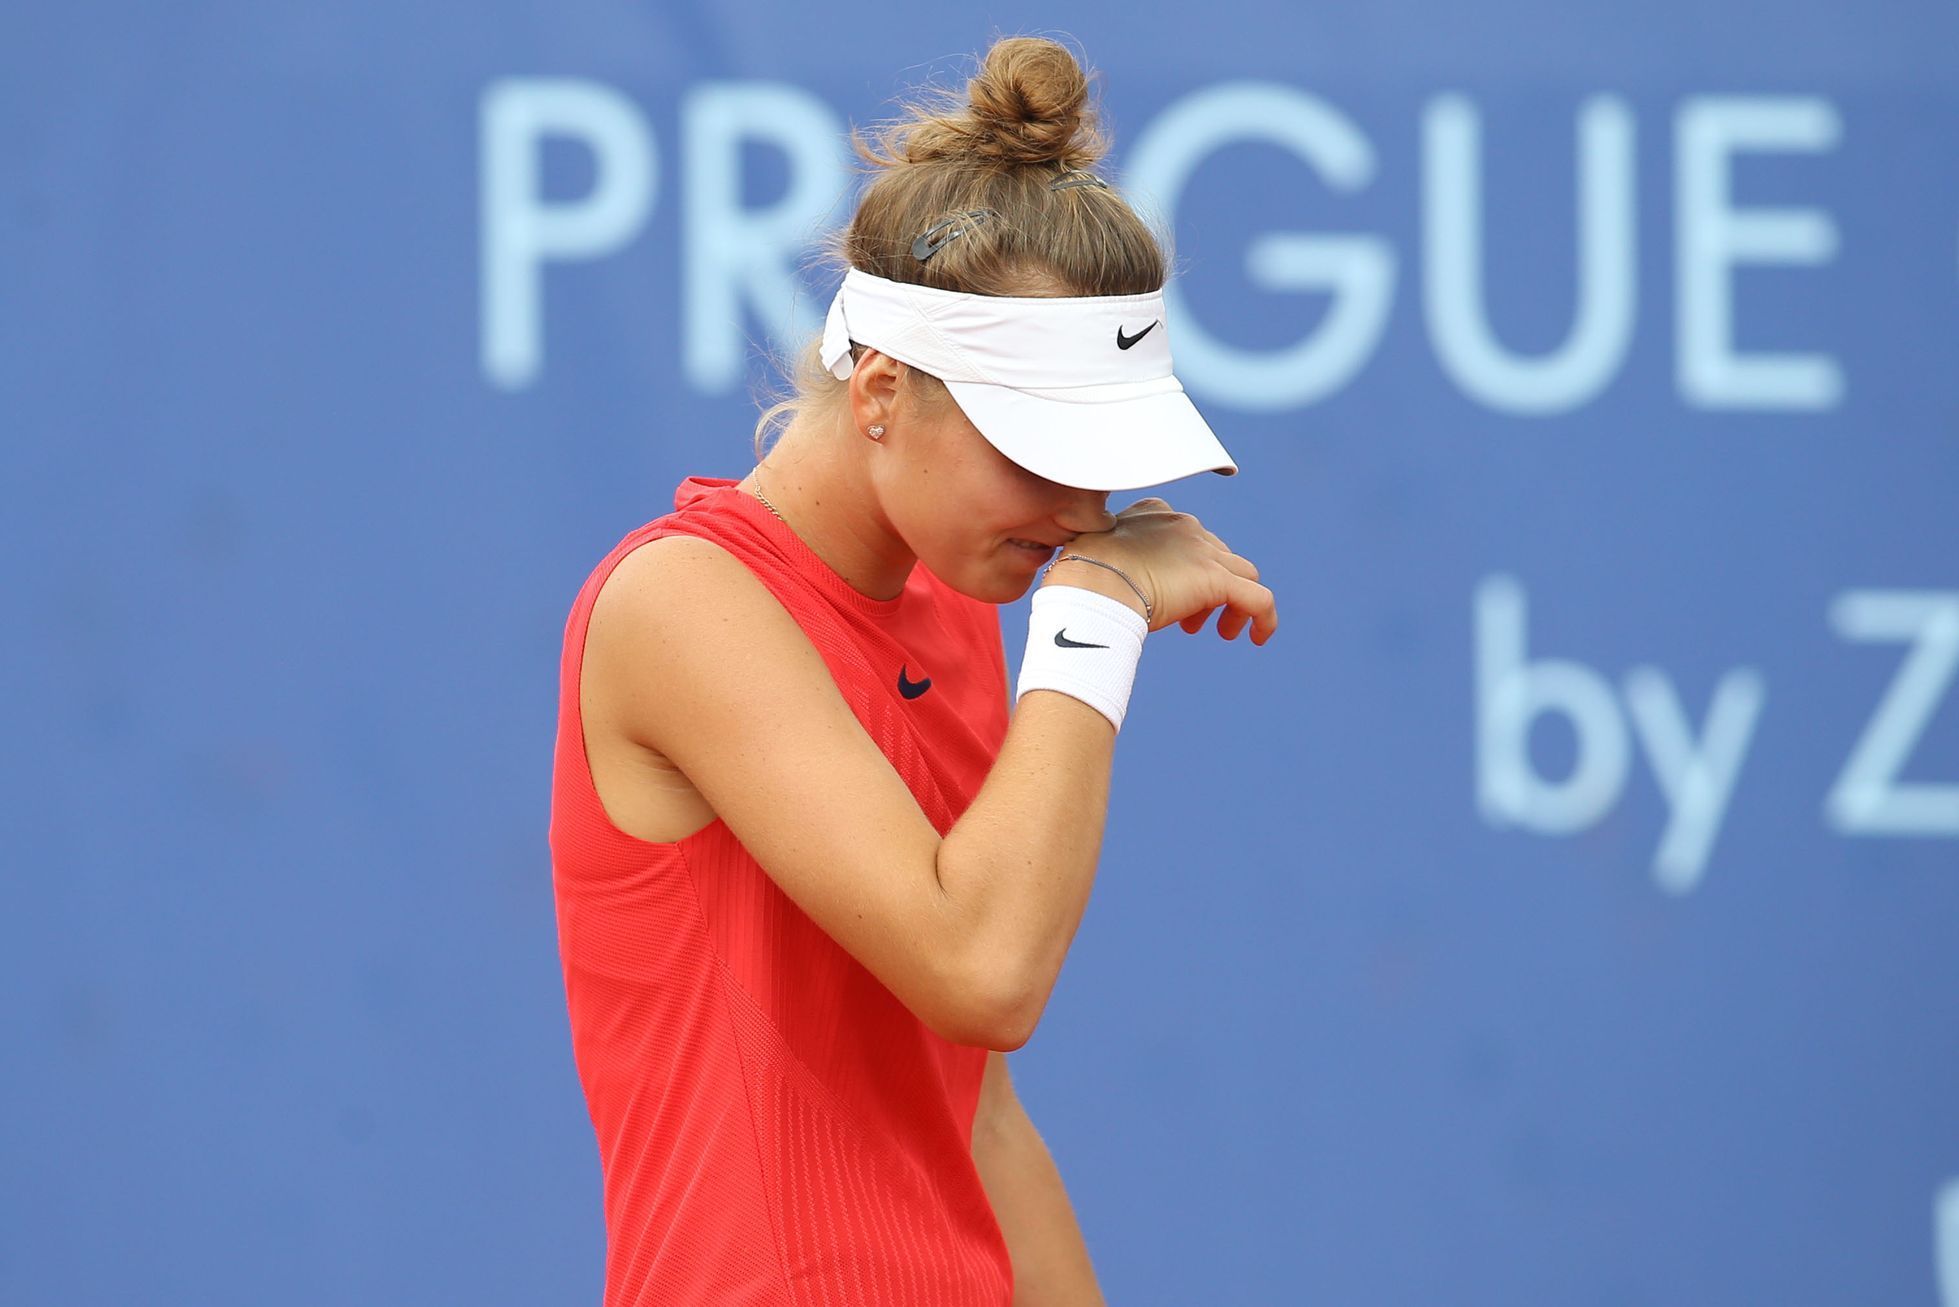 Markéta Vondroušová na Prague Open 2017 (ITF)